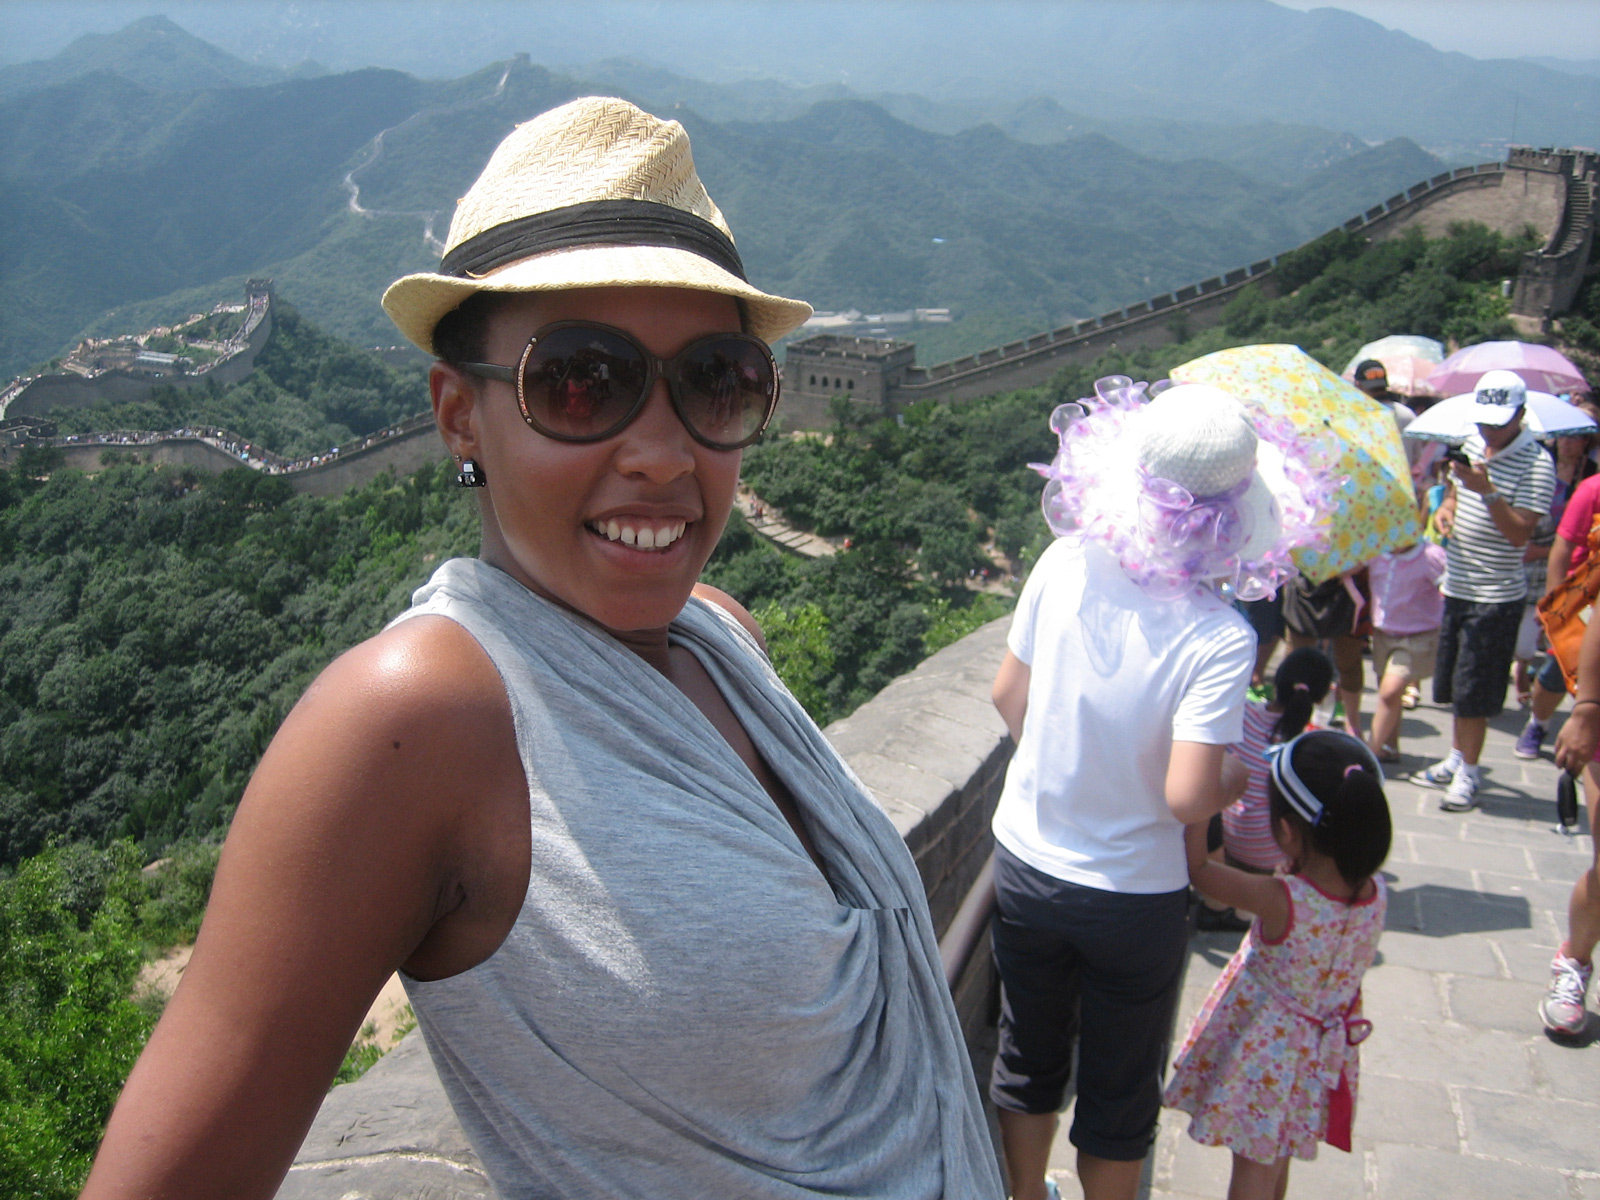 I climbed the Great Wall